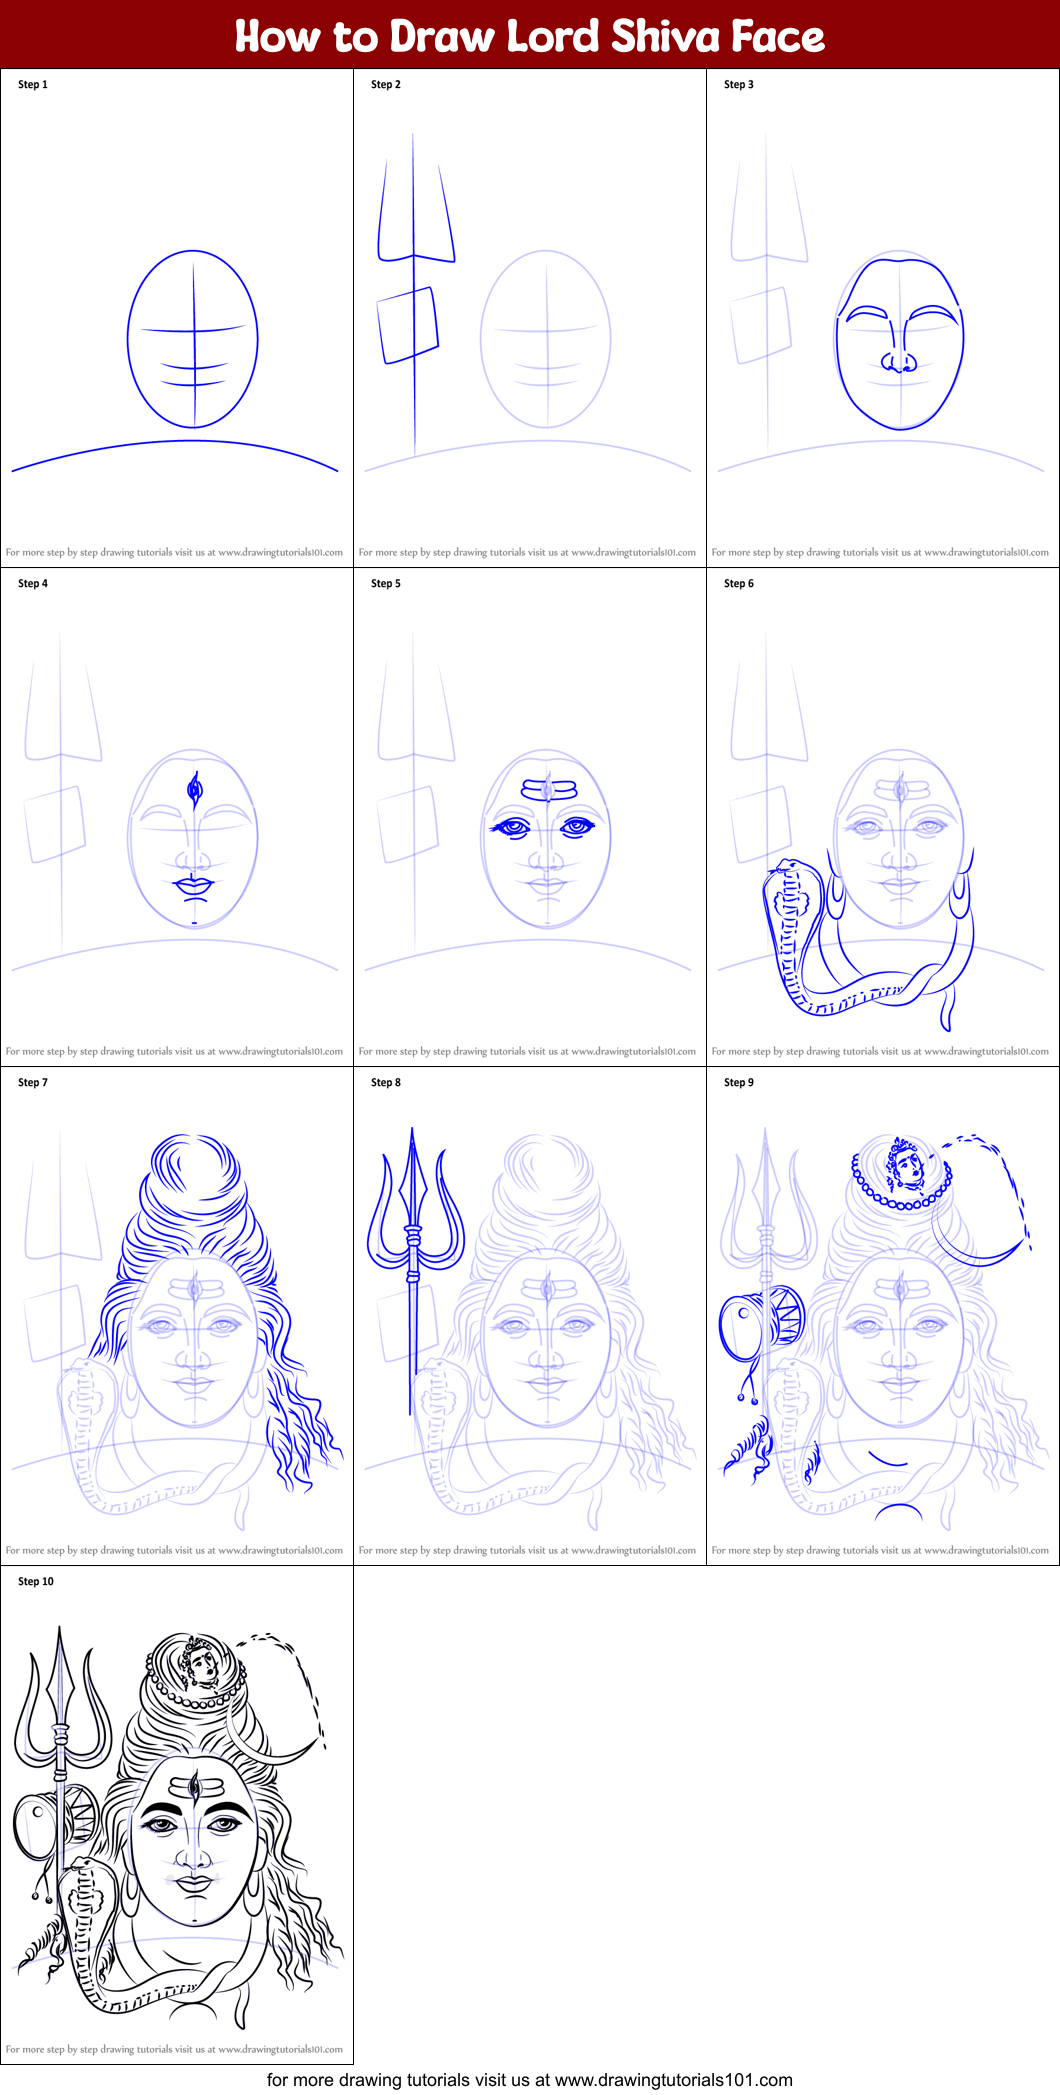 Shiva sketch on Pinterest